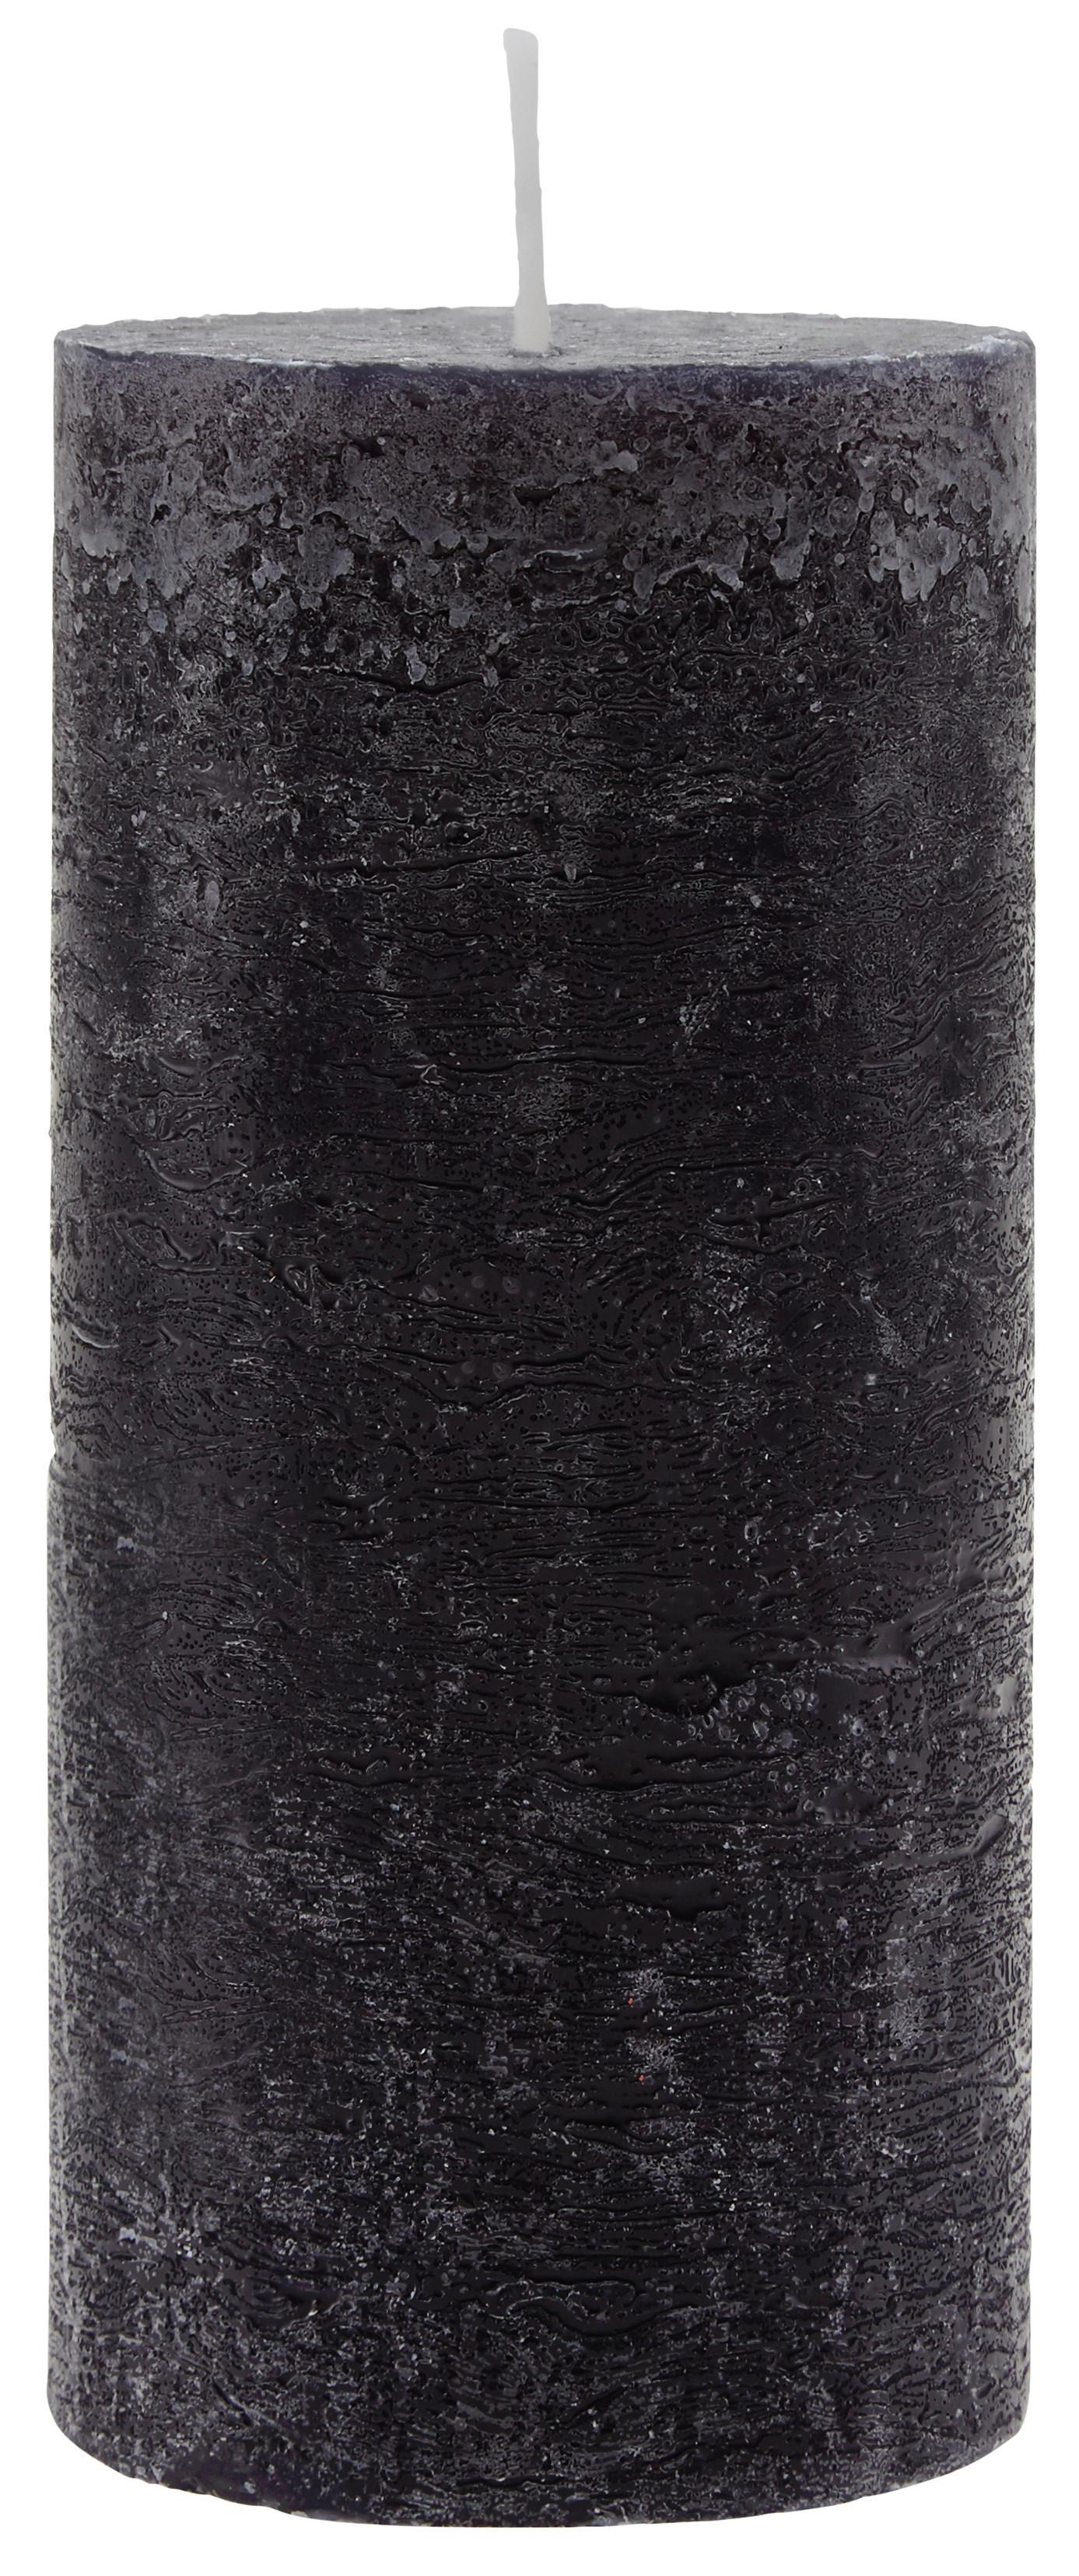 Válcová Svíčka Lia - černá, Moderní (6,8/15cm) - Premium Living